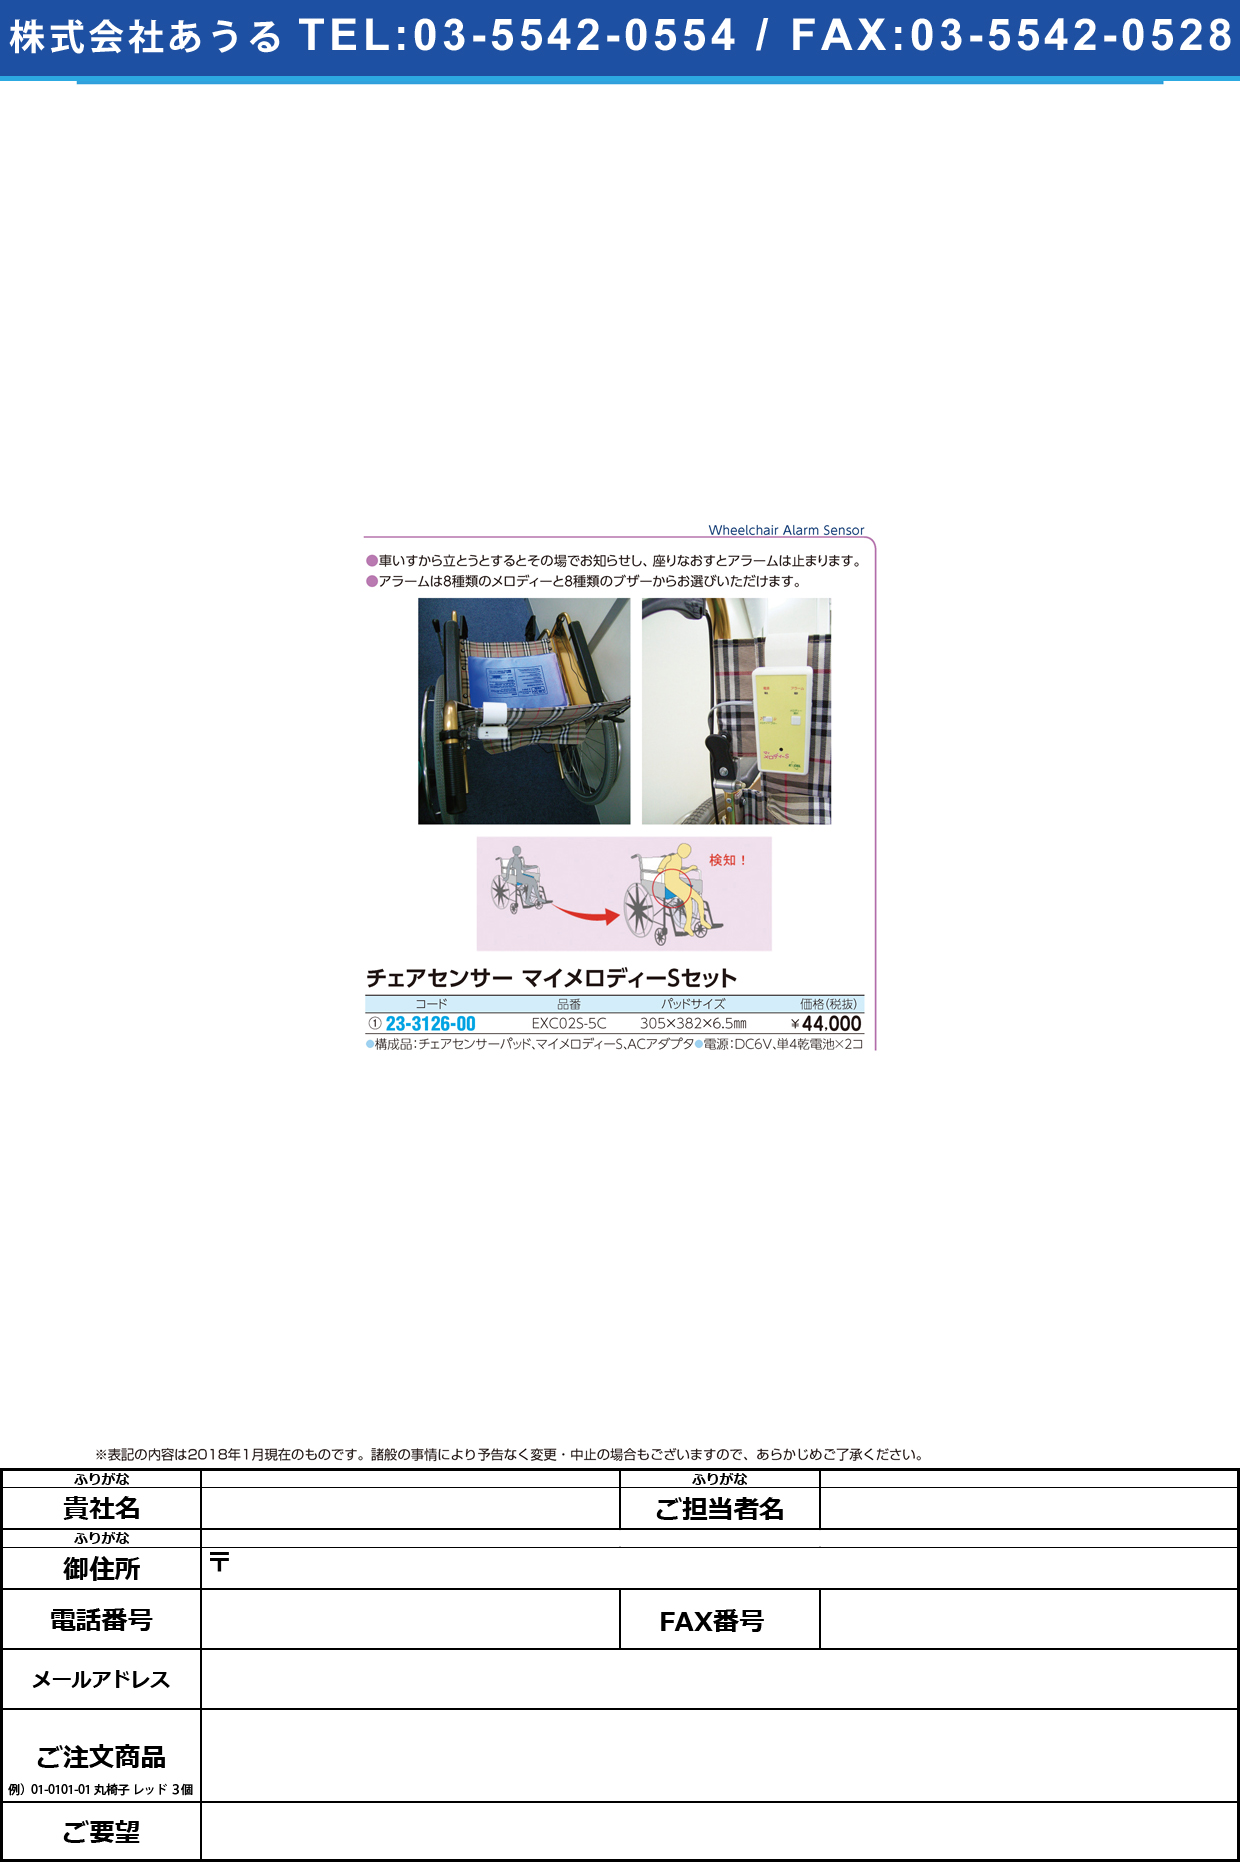 (23-3126-00)マイメロディーＳチェアセット EXC02S-5C ﾏｲﾒﾛﾃﾞｨｰSﾁｪｱｾｯﾄ【1台単位】【2019年カタログ商品】